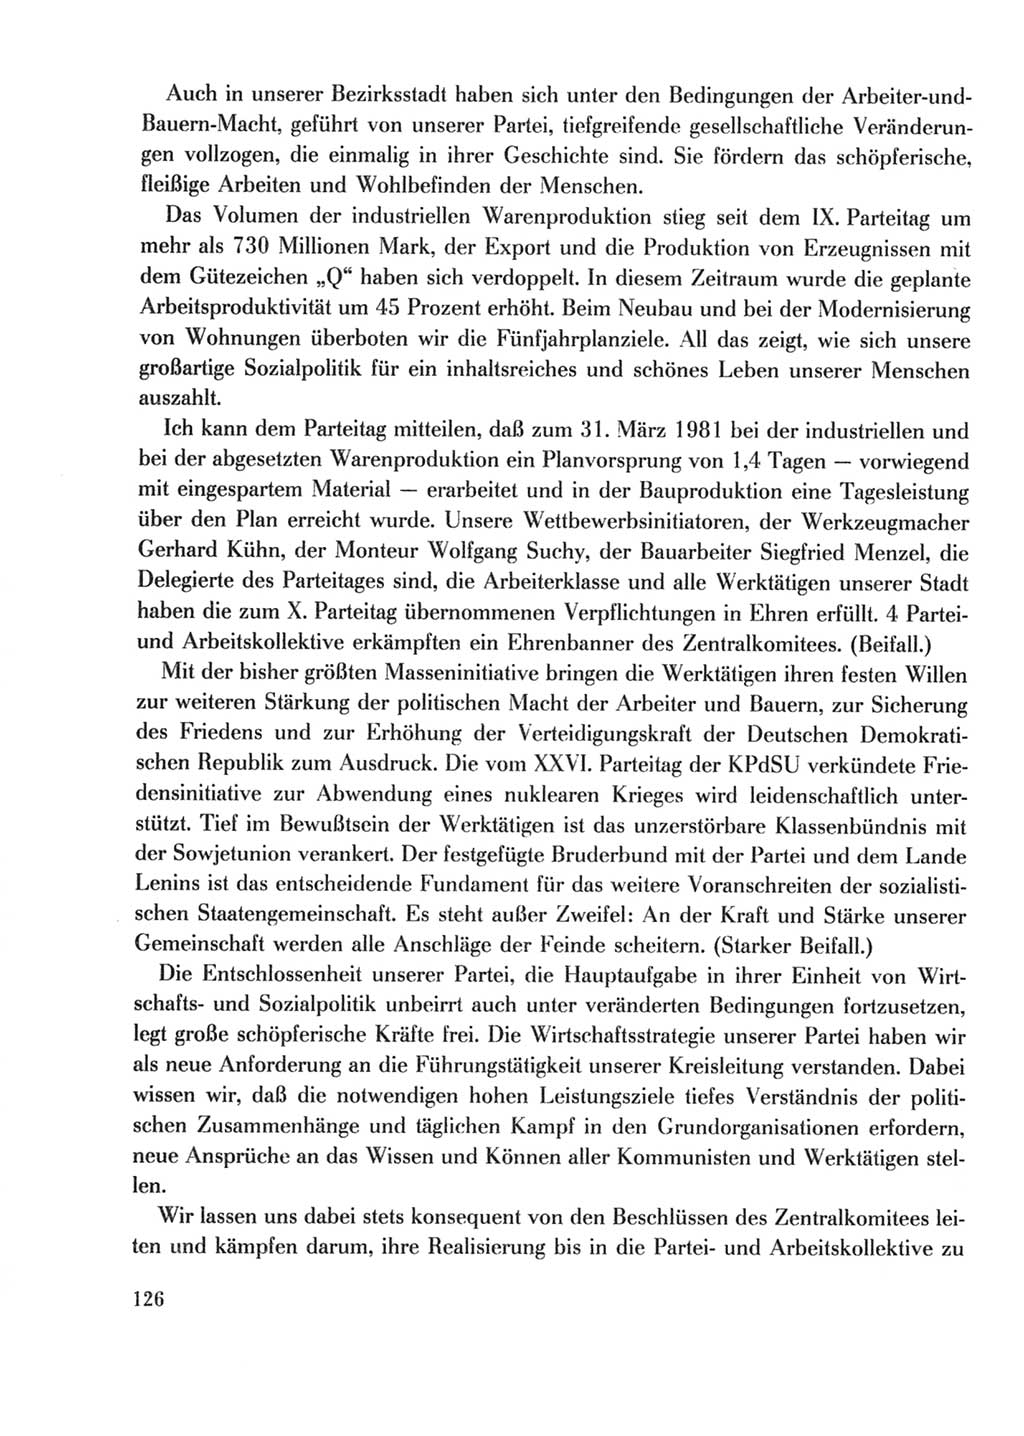 Protokoll der Verhandlungen des Ⅹ. Parteitages der Sozialistischen Einheitspartei Deutschlands (SED) [Deutsche Demokratische Republik (DDR)] 1981, Band 2, Seite 126 (Prot. Verh. Ⅹ. PT SED DDR 1981, Bd. 2, S. 126)